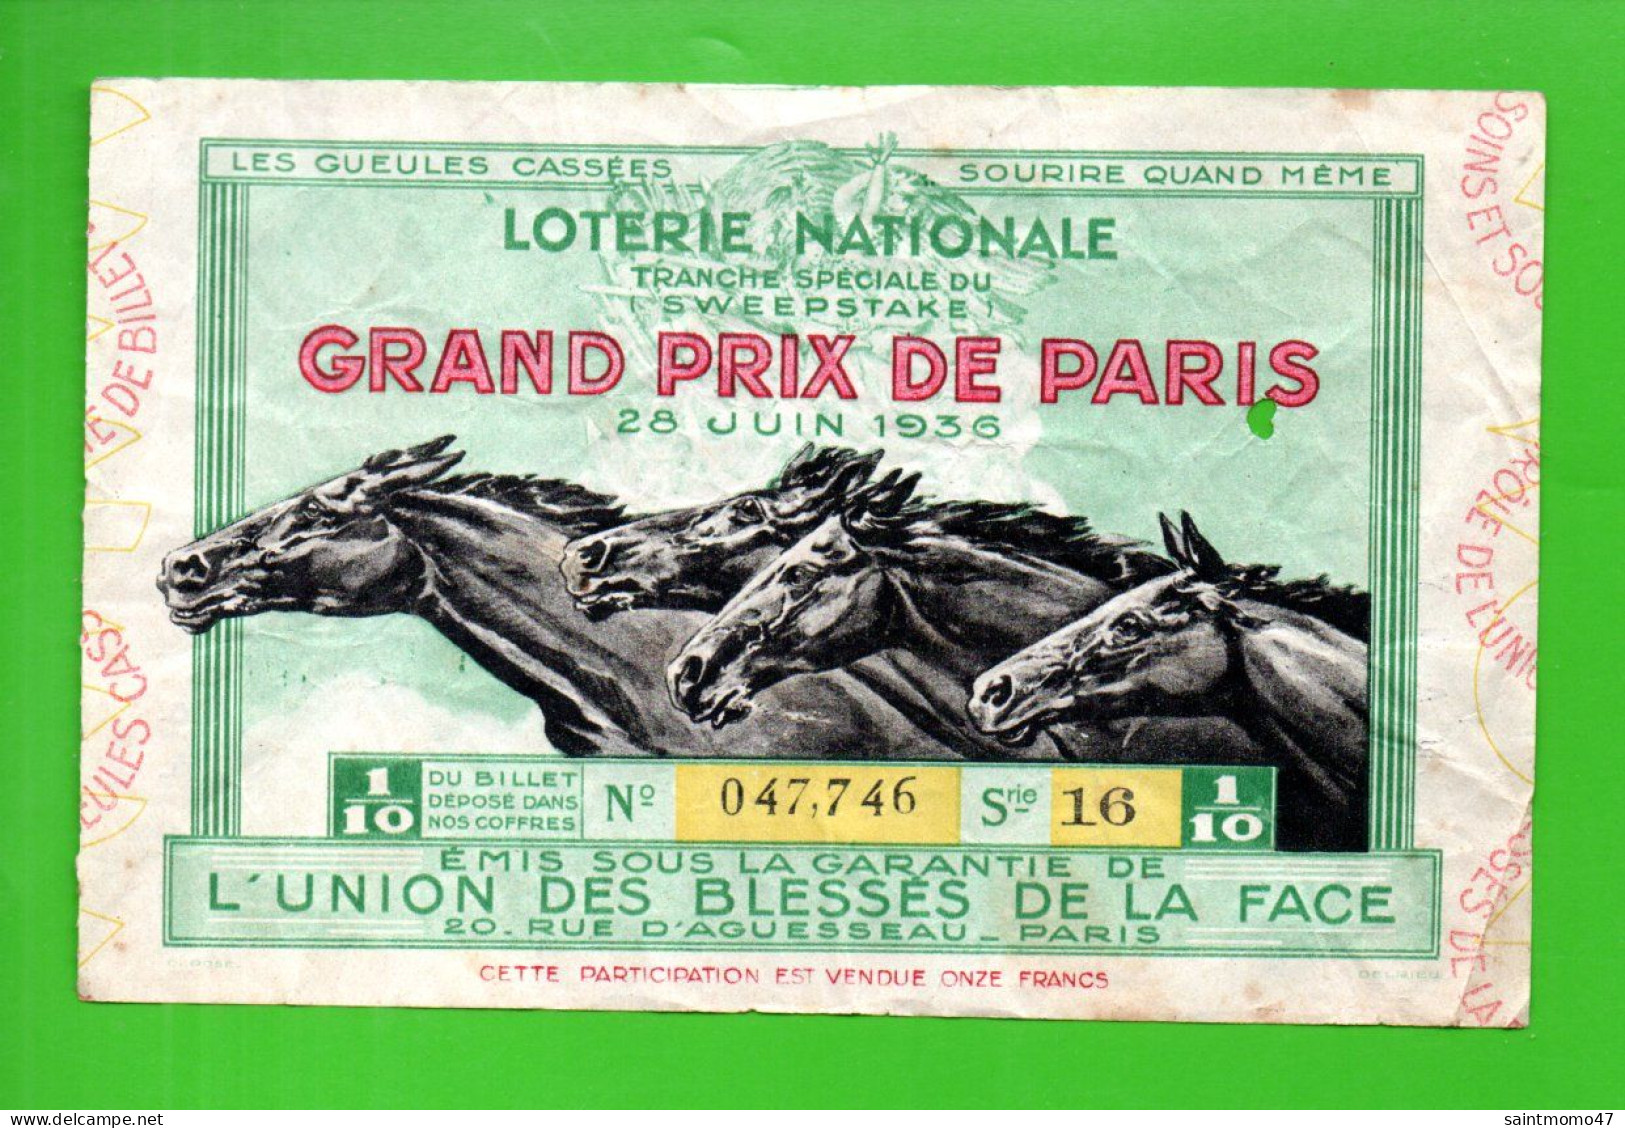 FRANCE . LOTERIE NATIONALE . " GRAND PRIX DE PARIS 1936 " - Ref. N°13027 - - Billets De Loterie